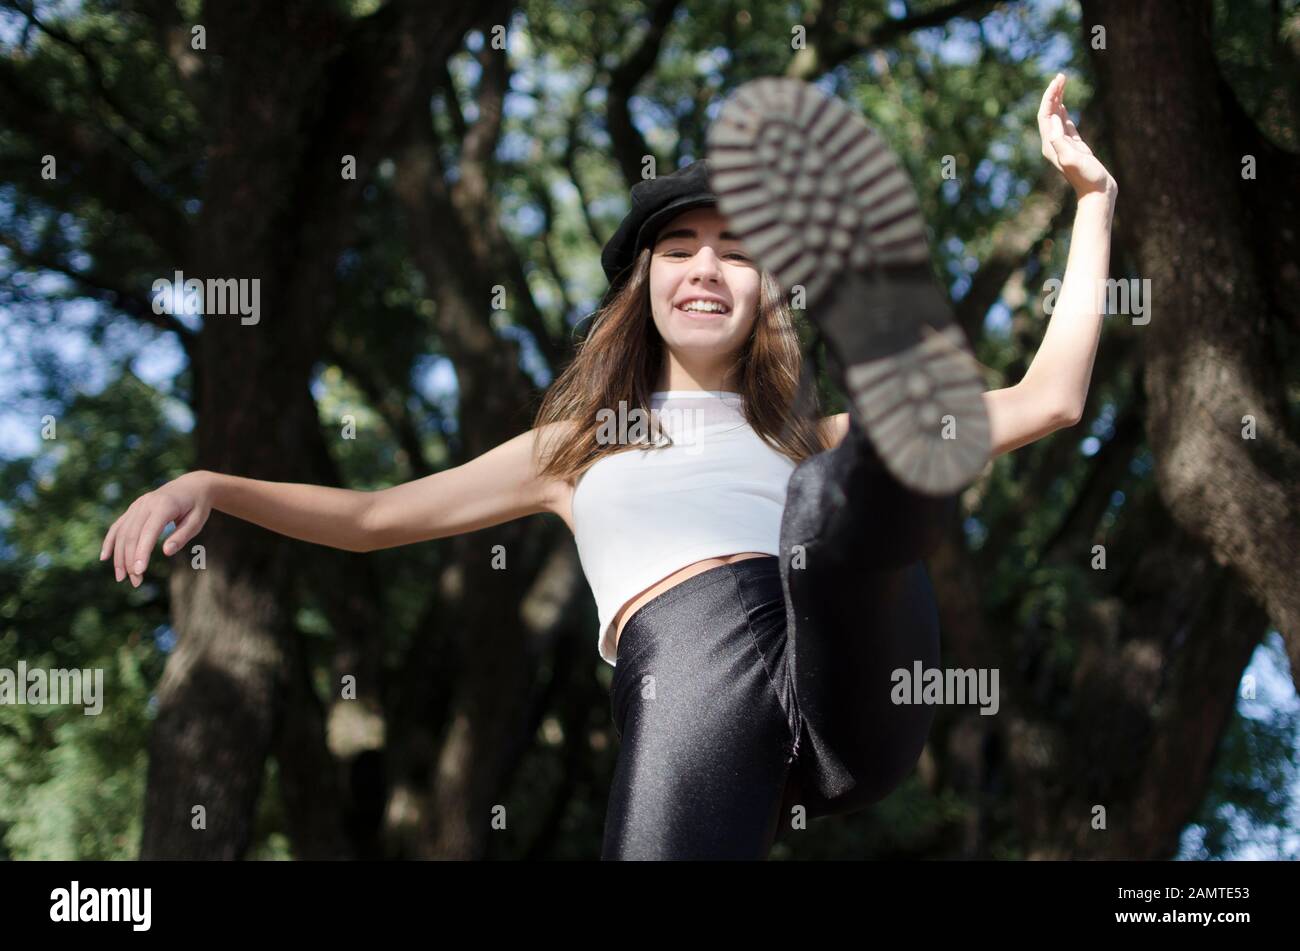 Une adolescente souriante se tenant dans un parc qui lui donne la jambe en l'air, en Argentine Banque D'Images